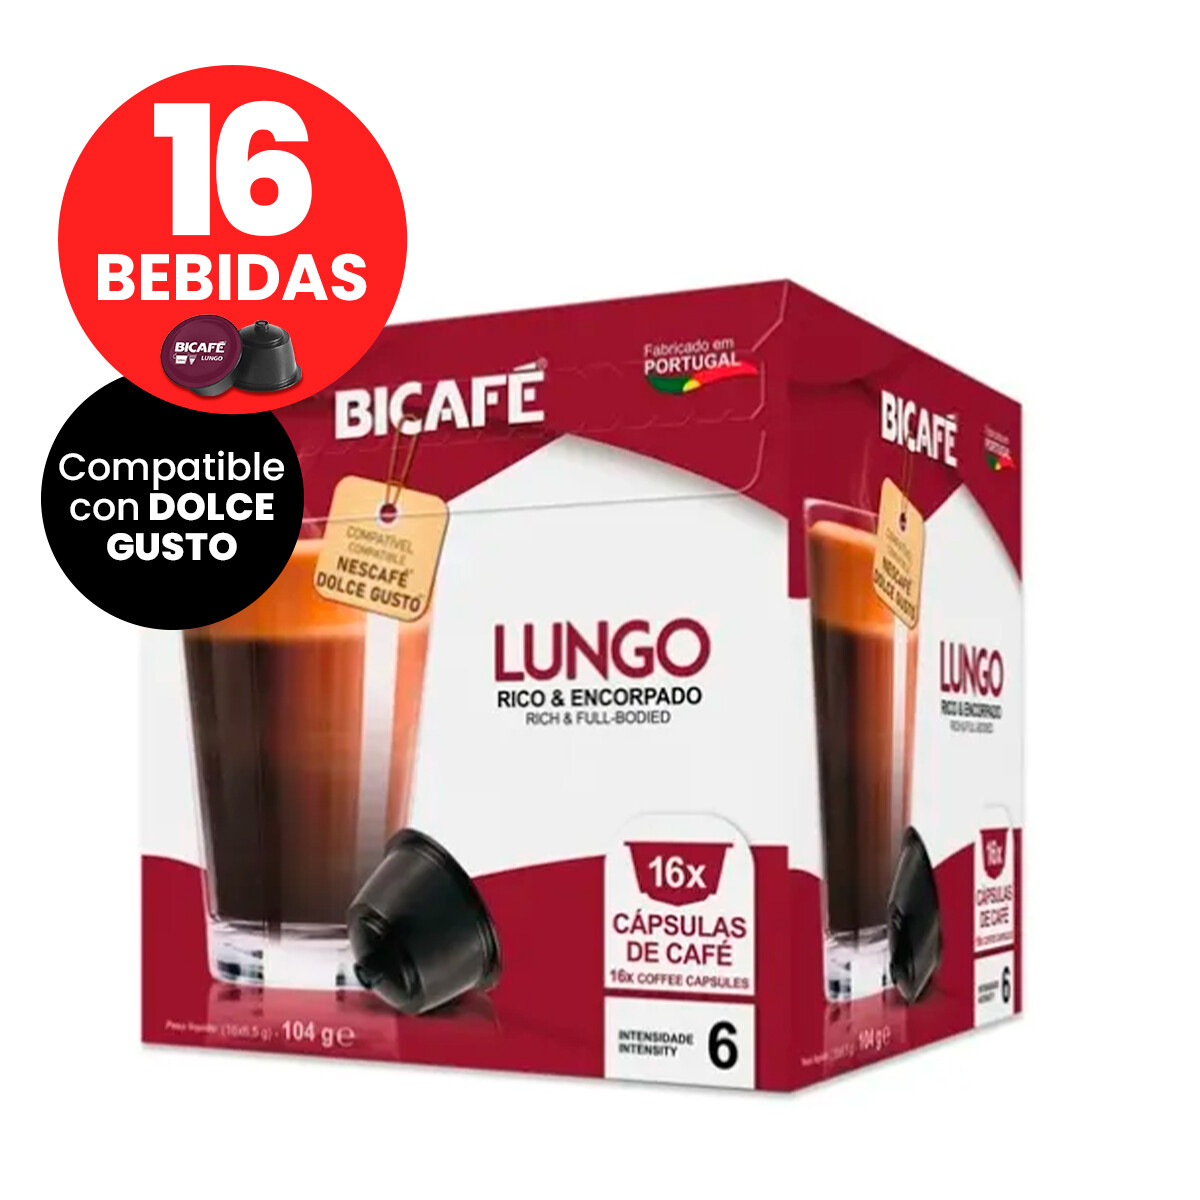 Capsulas Bicafe Lungo Compatible Dolce Gusto X16 Bebidas 